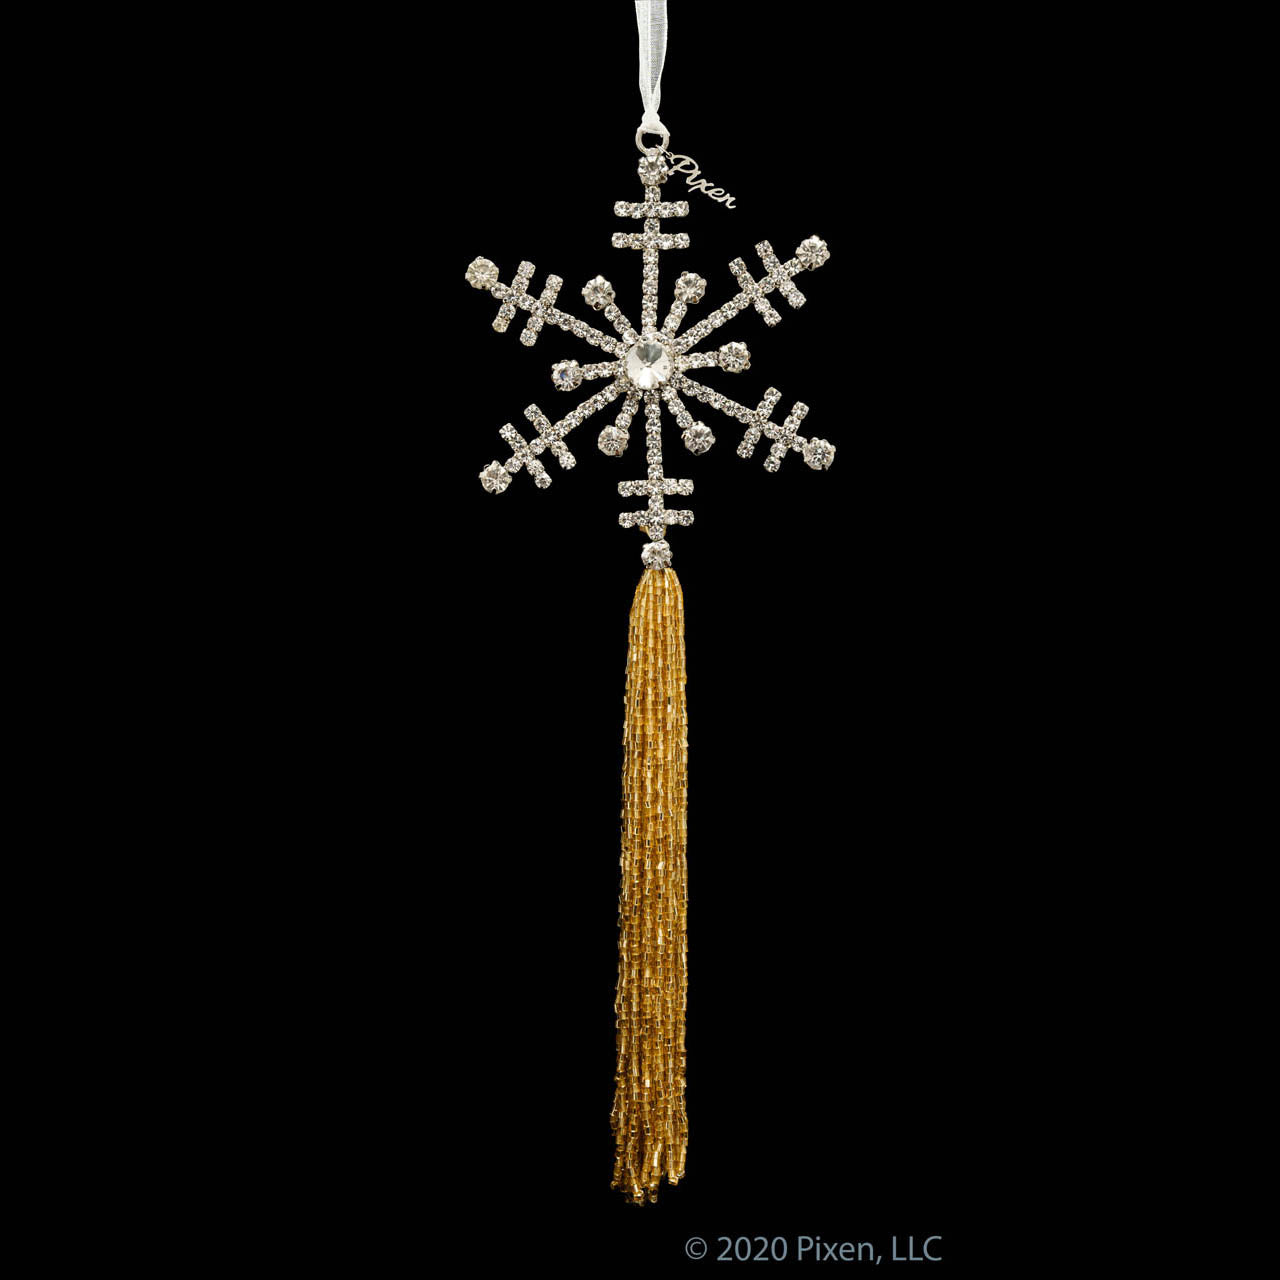 Glint Snowflake Christmas Ornament by Pixen